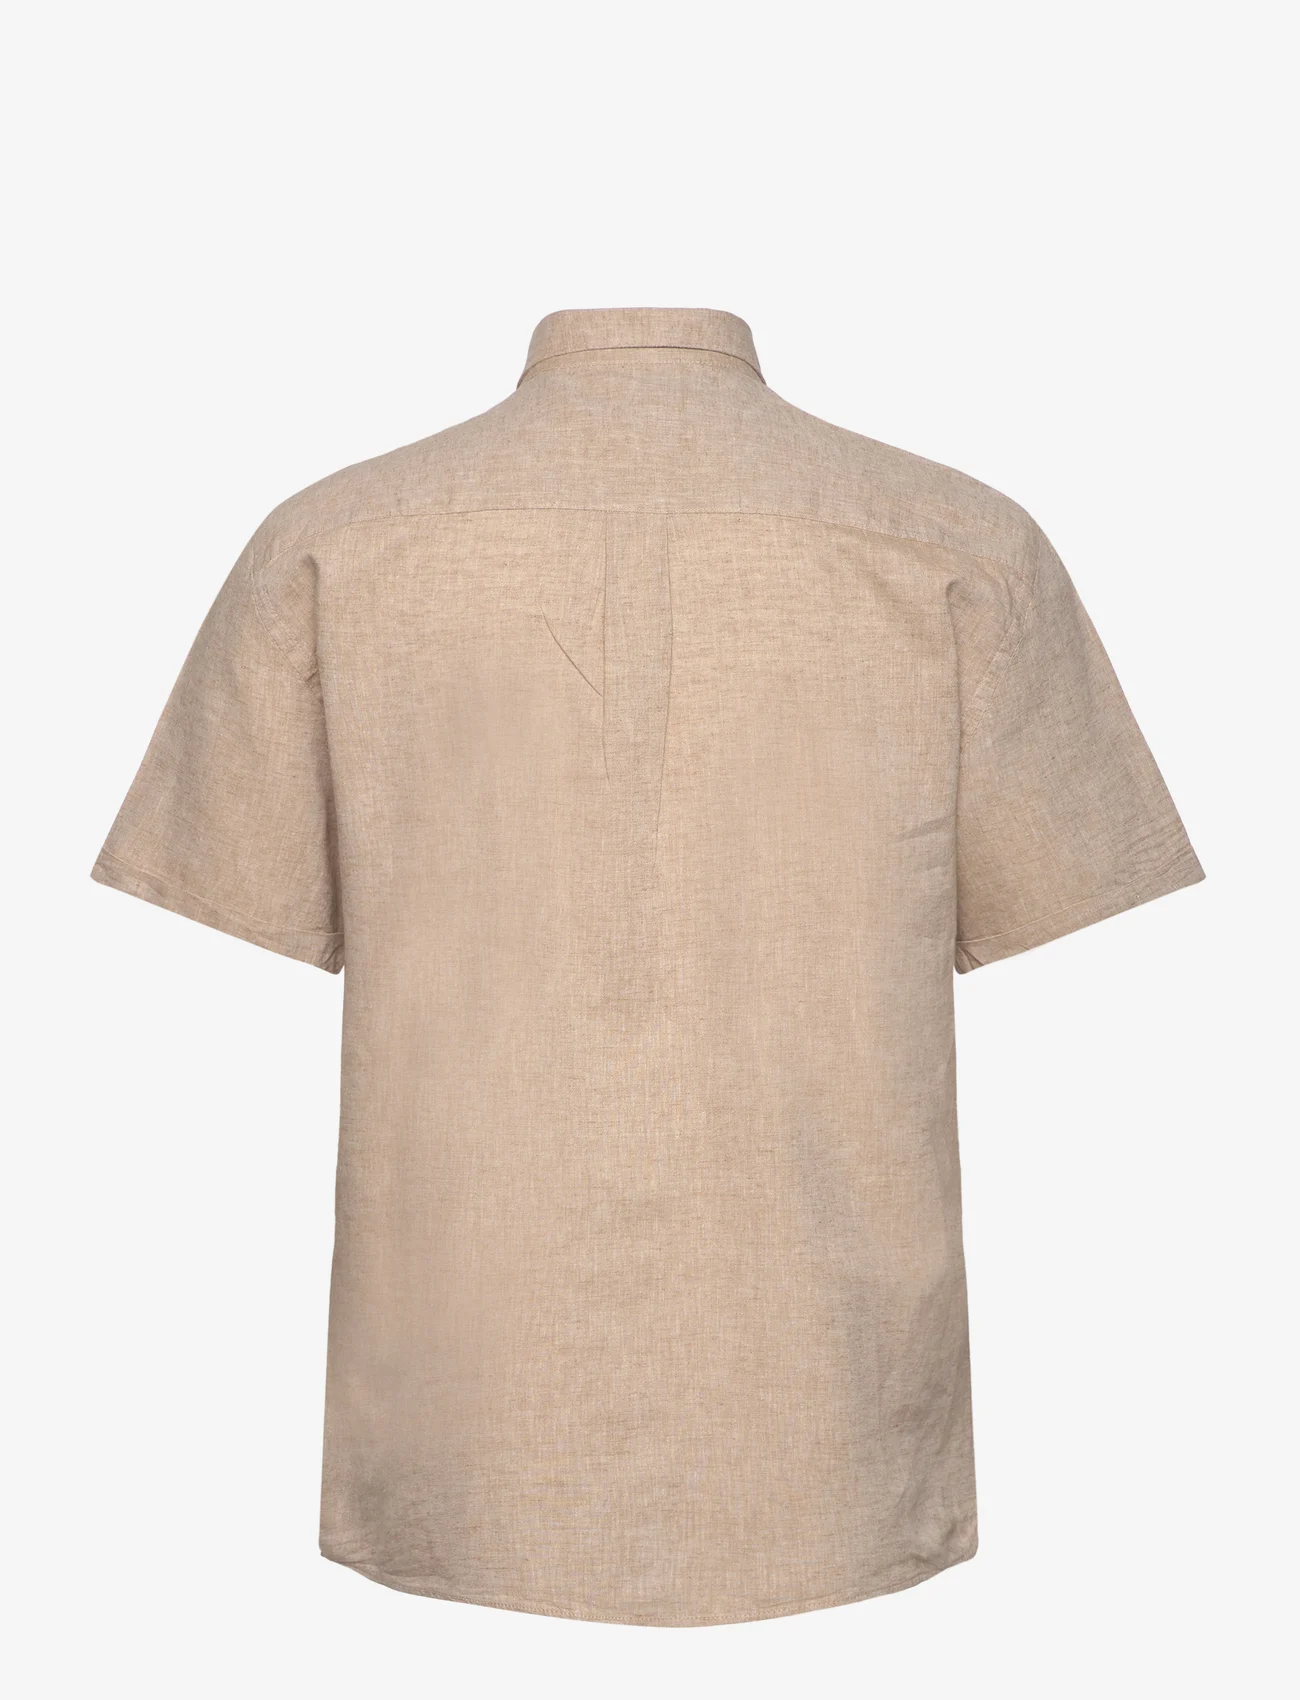 Lindbergh - Cotton/linen shirt S/S - pellavakauluspaidat - mid sand - 1